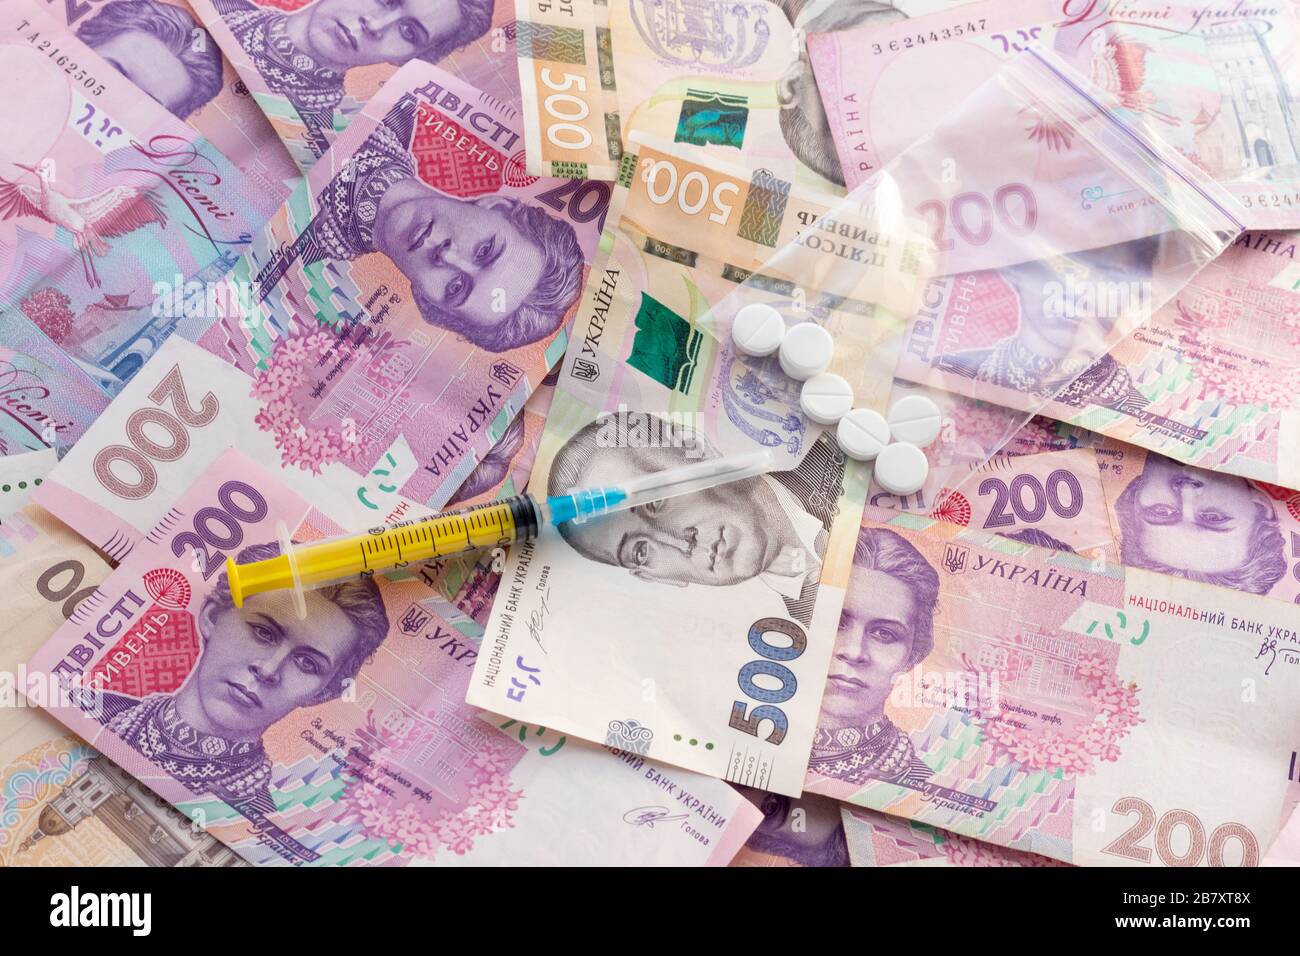 Spritze auf dem Stapel ukrainischer Banknoten. Verkauf von Drogen, Ocain, Heroin oder Ecstasy. Illegales Geschäft. Konzept für das Gesundheitswesen und die Medizin. Stockfoto